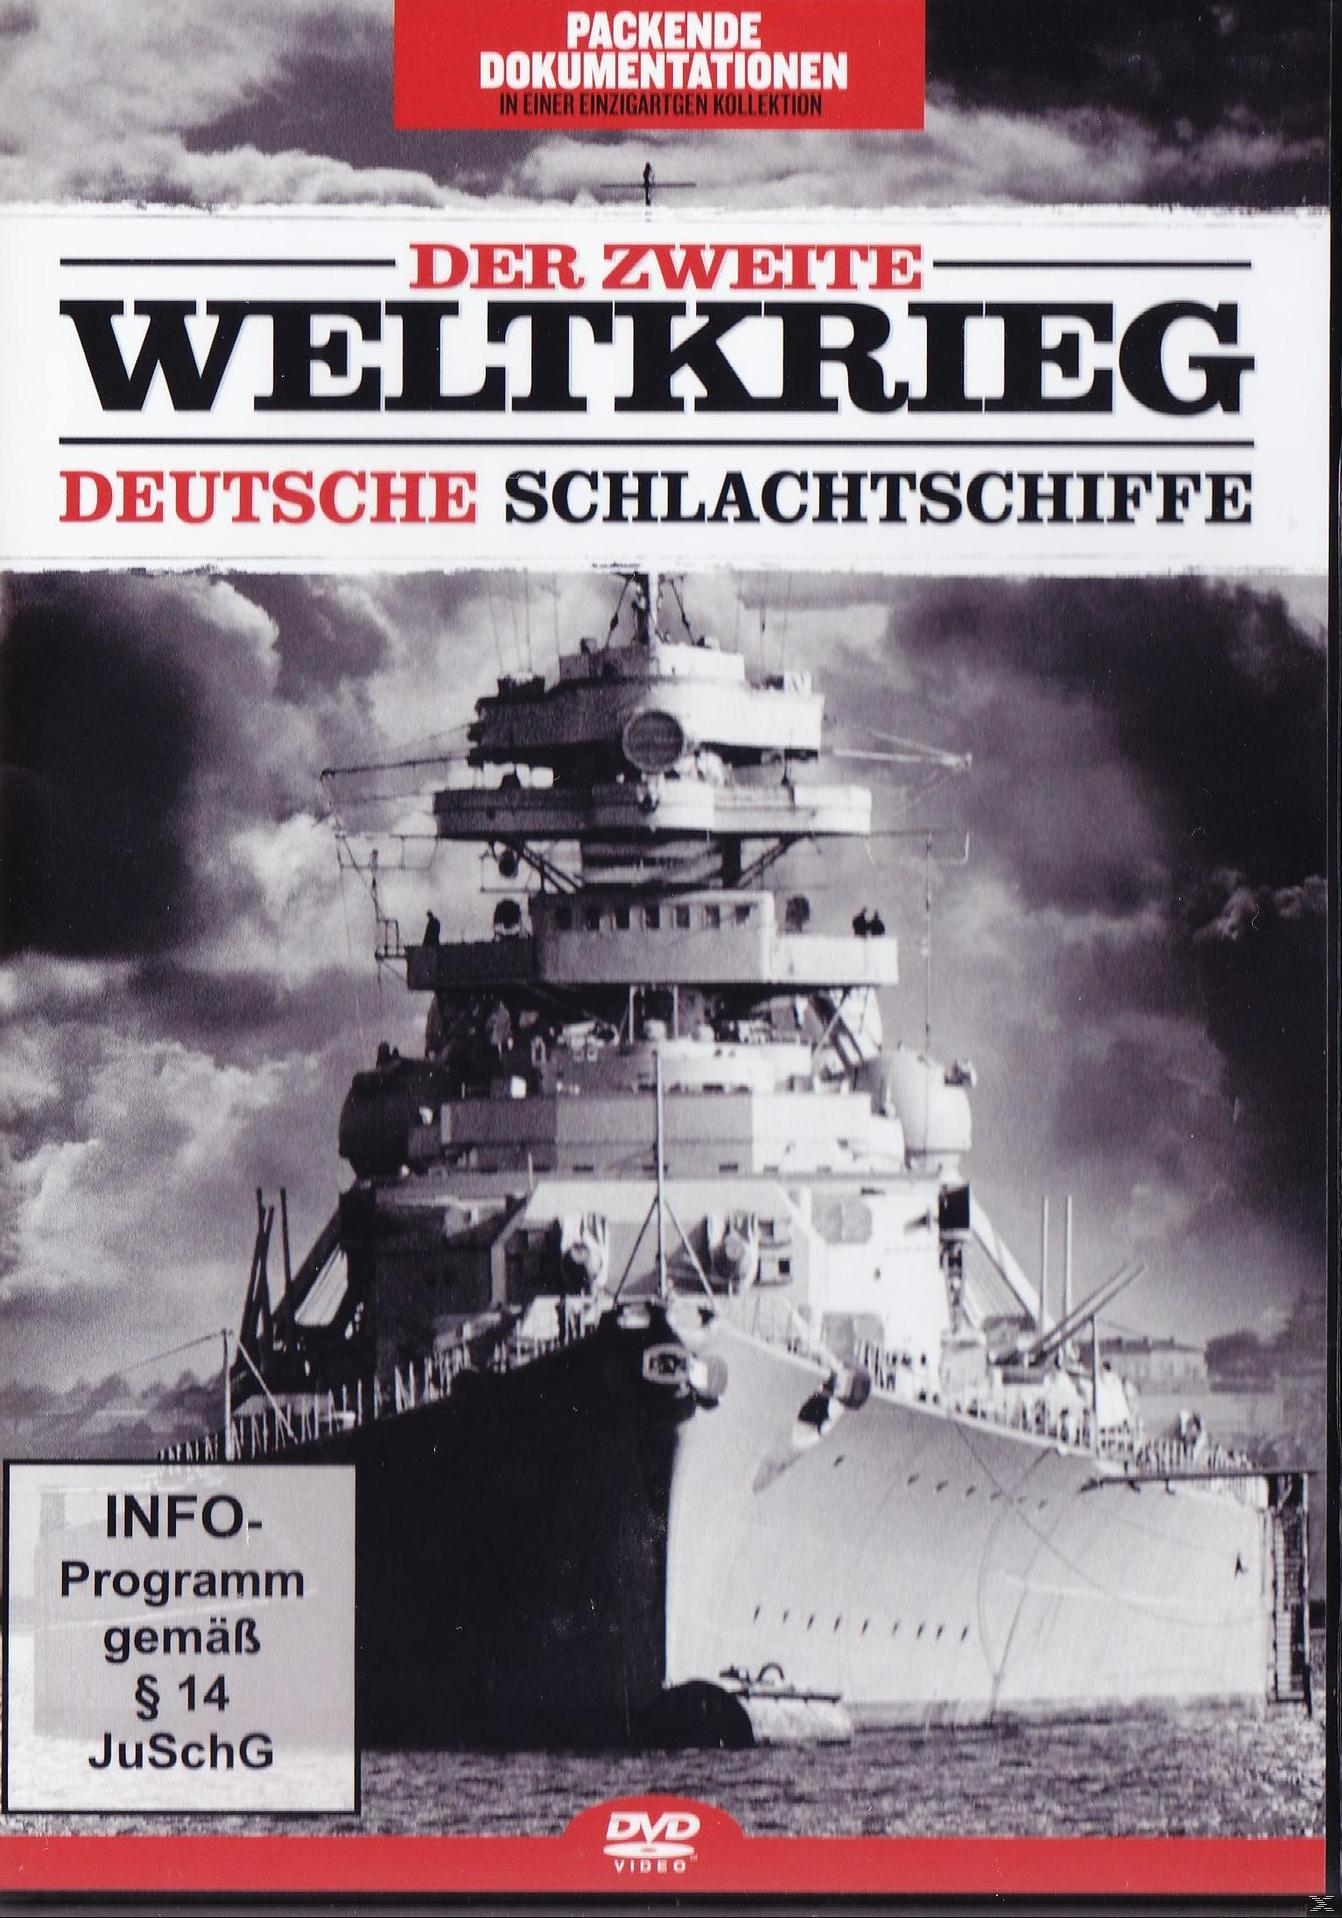 Schlachtschiffe Zweite Der Deutsche Weltkrieg: DVD